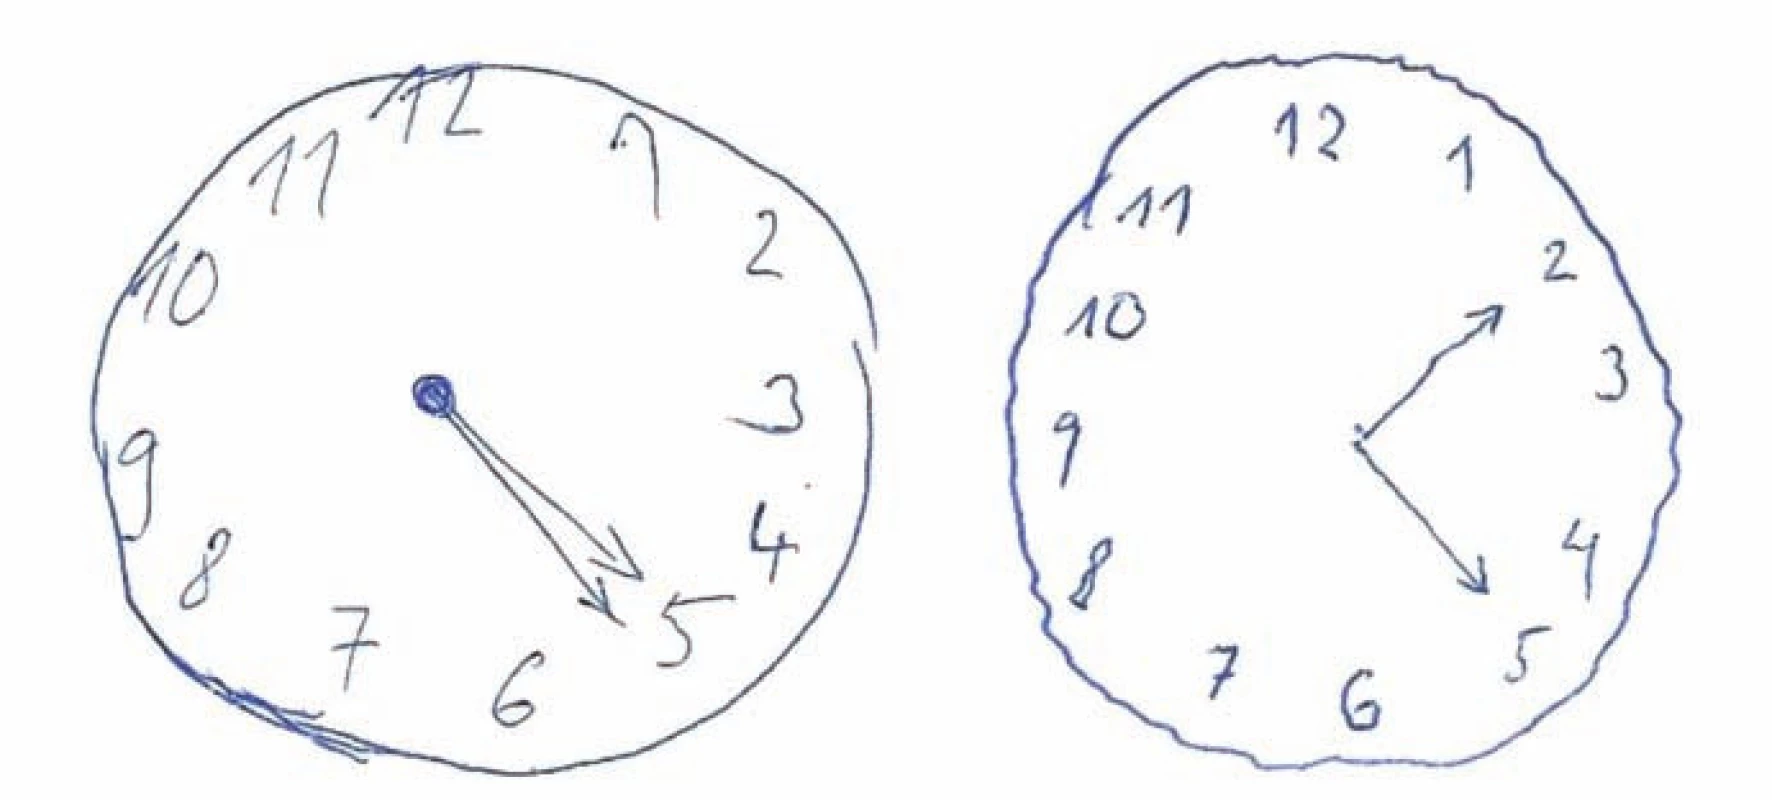 Ciferníky s různě závažnou odchylkou od správného řešení hodnocené škálou Addenbrookského kognitivního testu (ACE).
Závažnější chyba je skórovacím systémem ACE hodnocena stejným počtem bodů jako chyba méně závažná. Oba ciferníky s požadavkem času 5 hod 10 min získají v ACE 4 body. V prvním ciferníku jsou zakresleny stejně dlouhé ručičky ukazující špatný čas, což považujeme za závažnou chybu. Druhý obsahuje pouze shodně dlouhé ručičky při správném nastavení.
Fig. 1. Dials with different abnormalities compared to the correct performance rated using Addenbrooke´s Cognitive Examination (ACE) rules.
A major mistake is rated as a minor one by the same number of points using a scoring system of ACE. Both dials with a time of 5 hours 10 minutes will be scored with 4 points according to ACE instructions. The first dial contains equally long hands showing the wrong time. We consider it as the major mistake. The second one contains only equally long hands which are placed correctly.